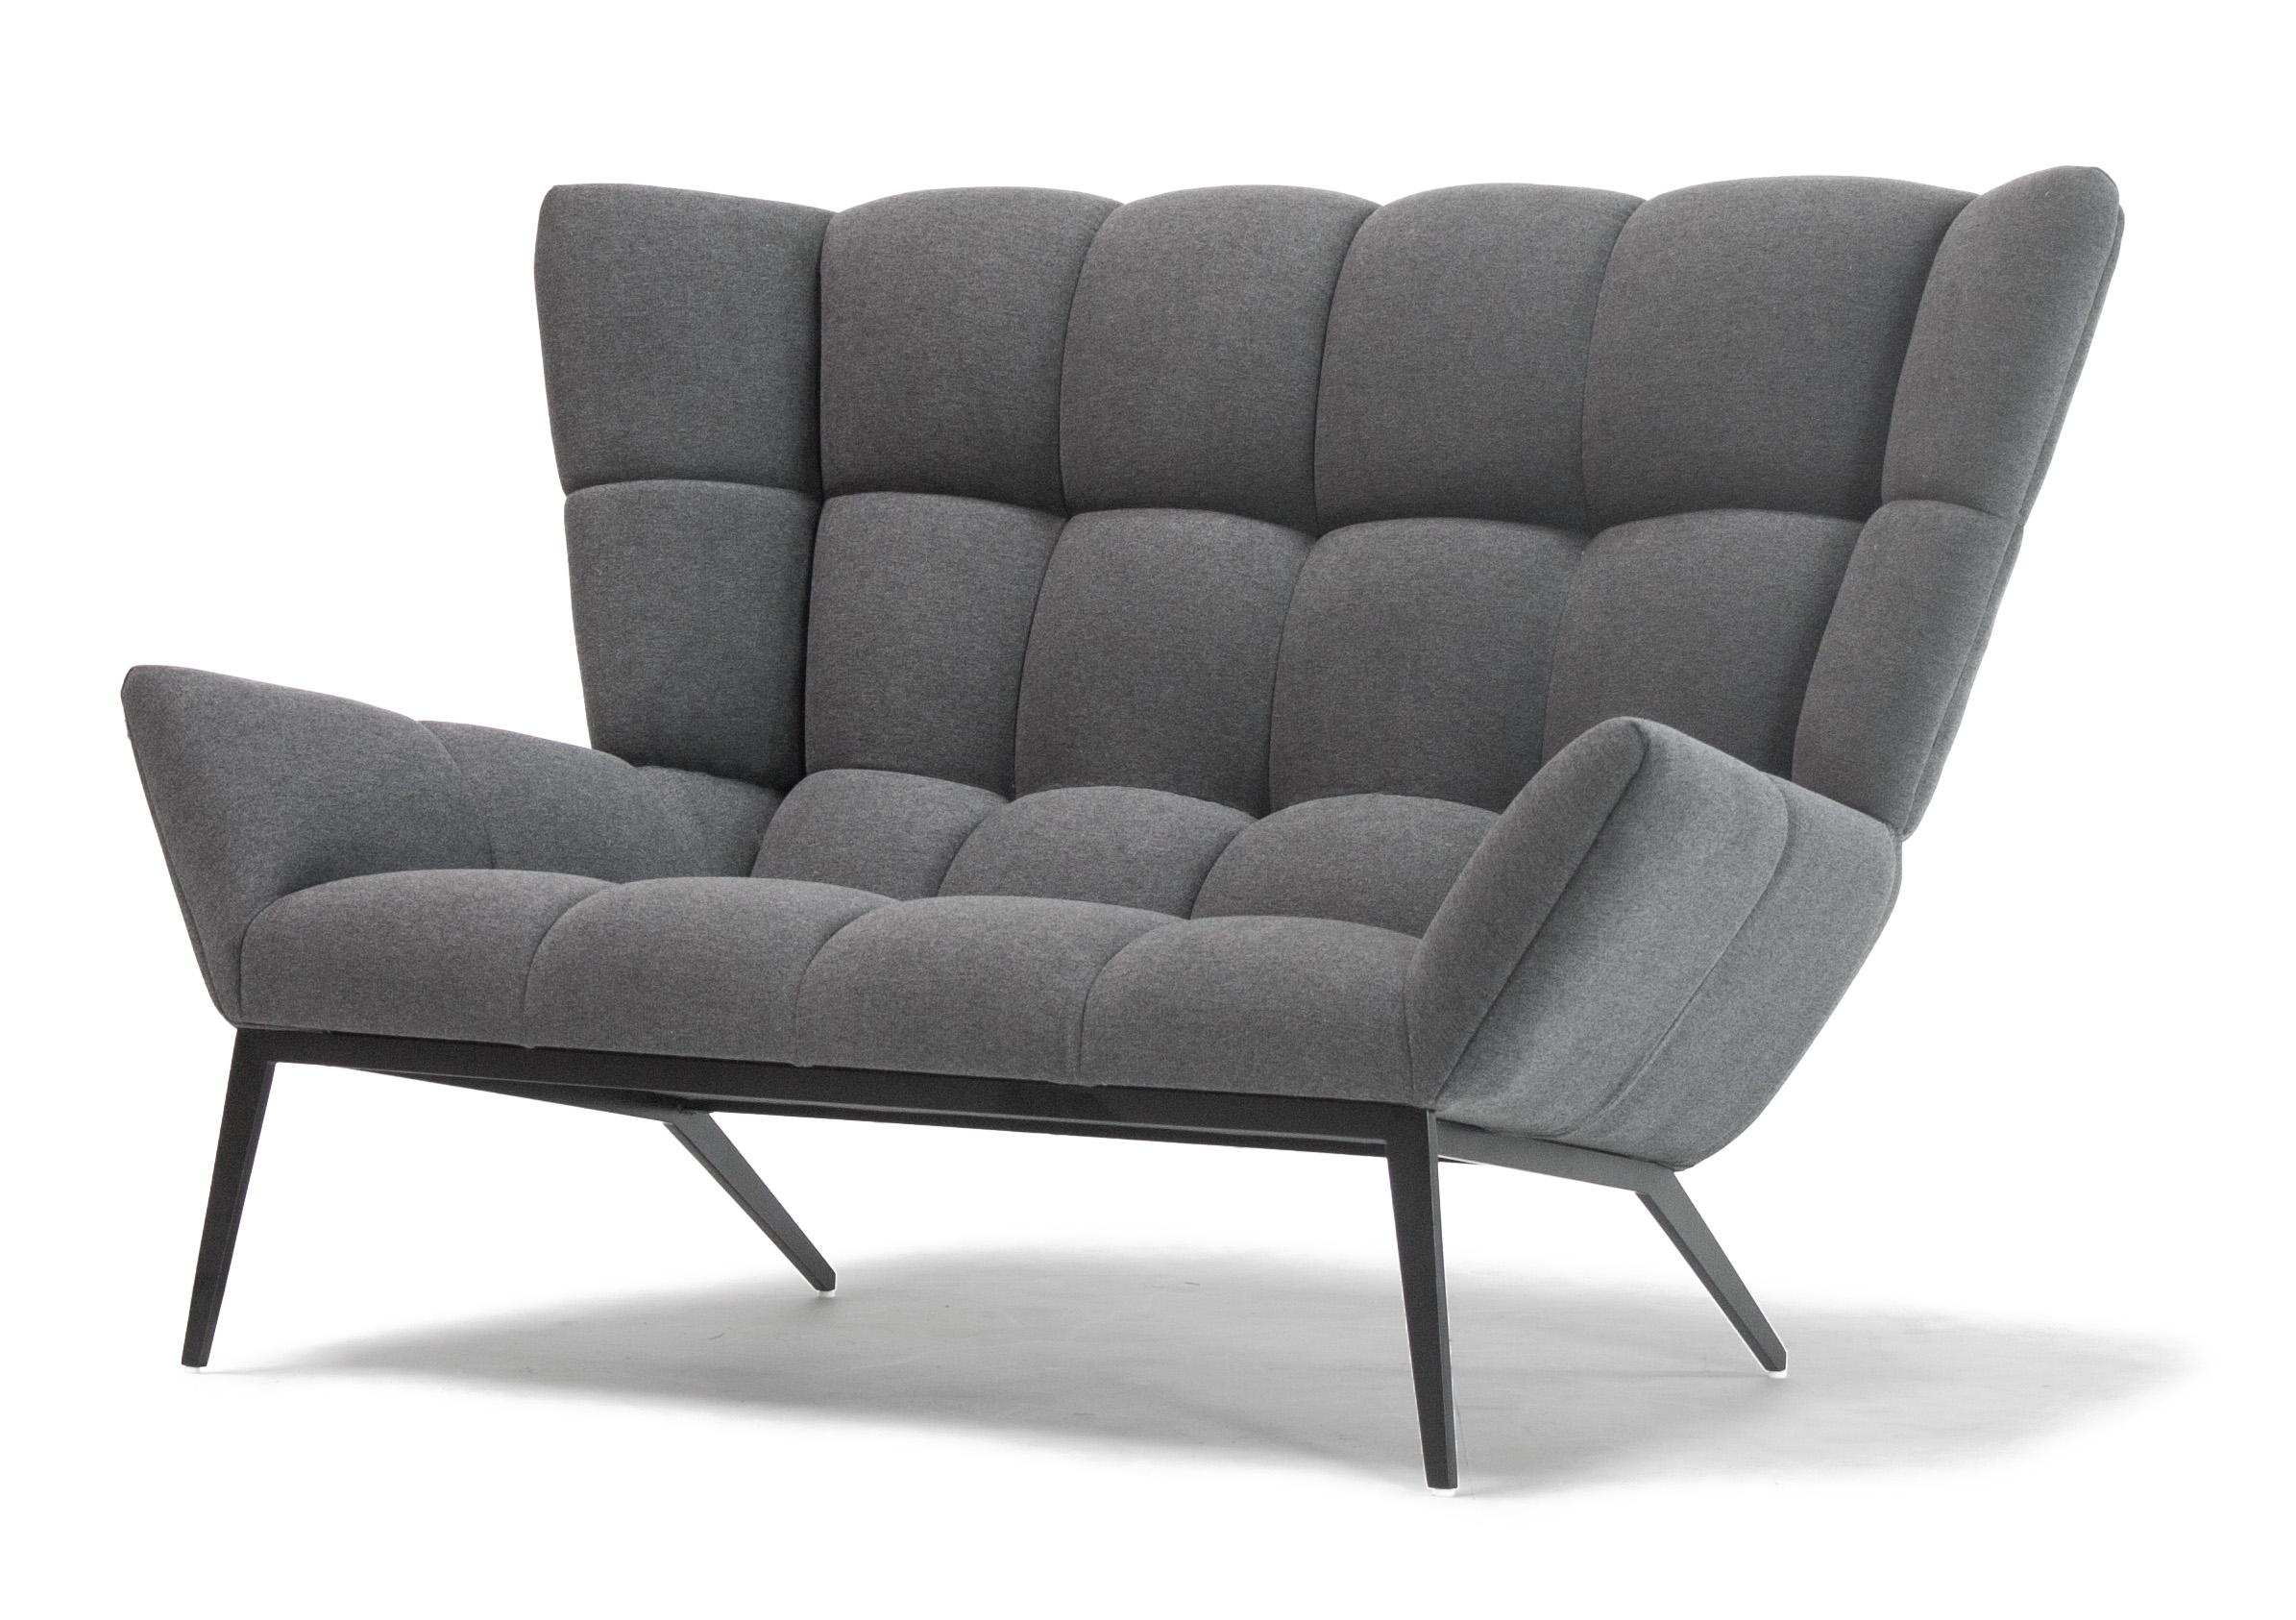 Die Tuulla Loveseat, wie auch der Tuulla Chair, bringt die Idee der Tuftings auf eine neue Ebene des Komforts für zwei. Der Sessel ist in einer eleganten und raffinierten Form aus Büscheln 